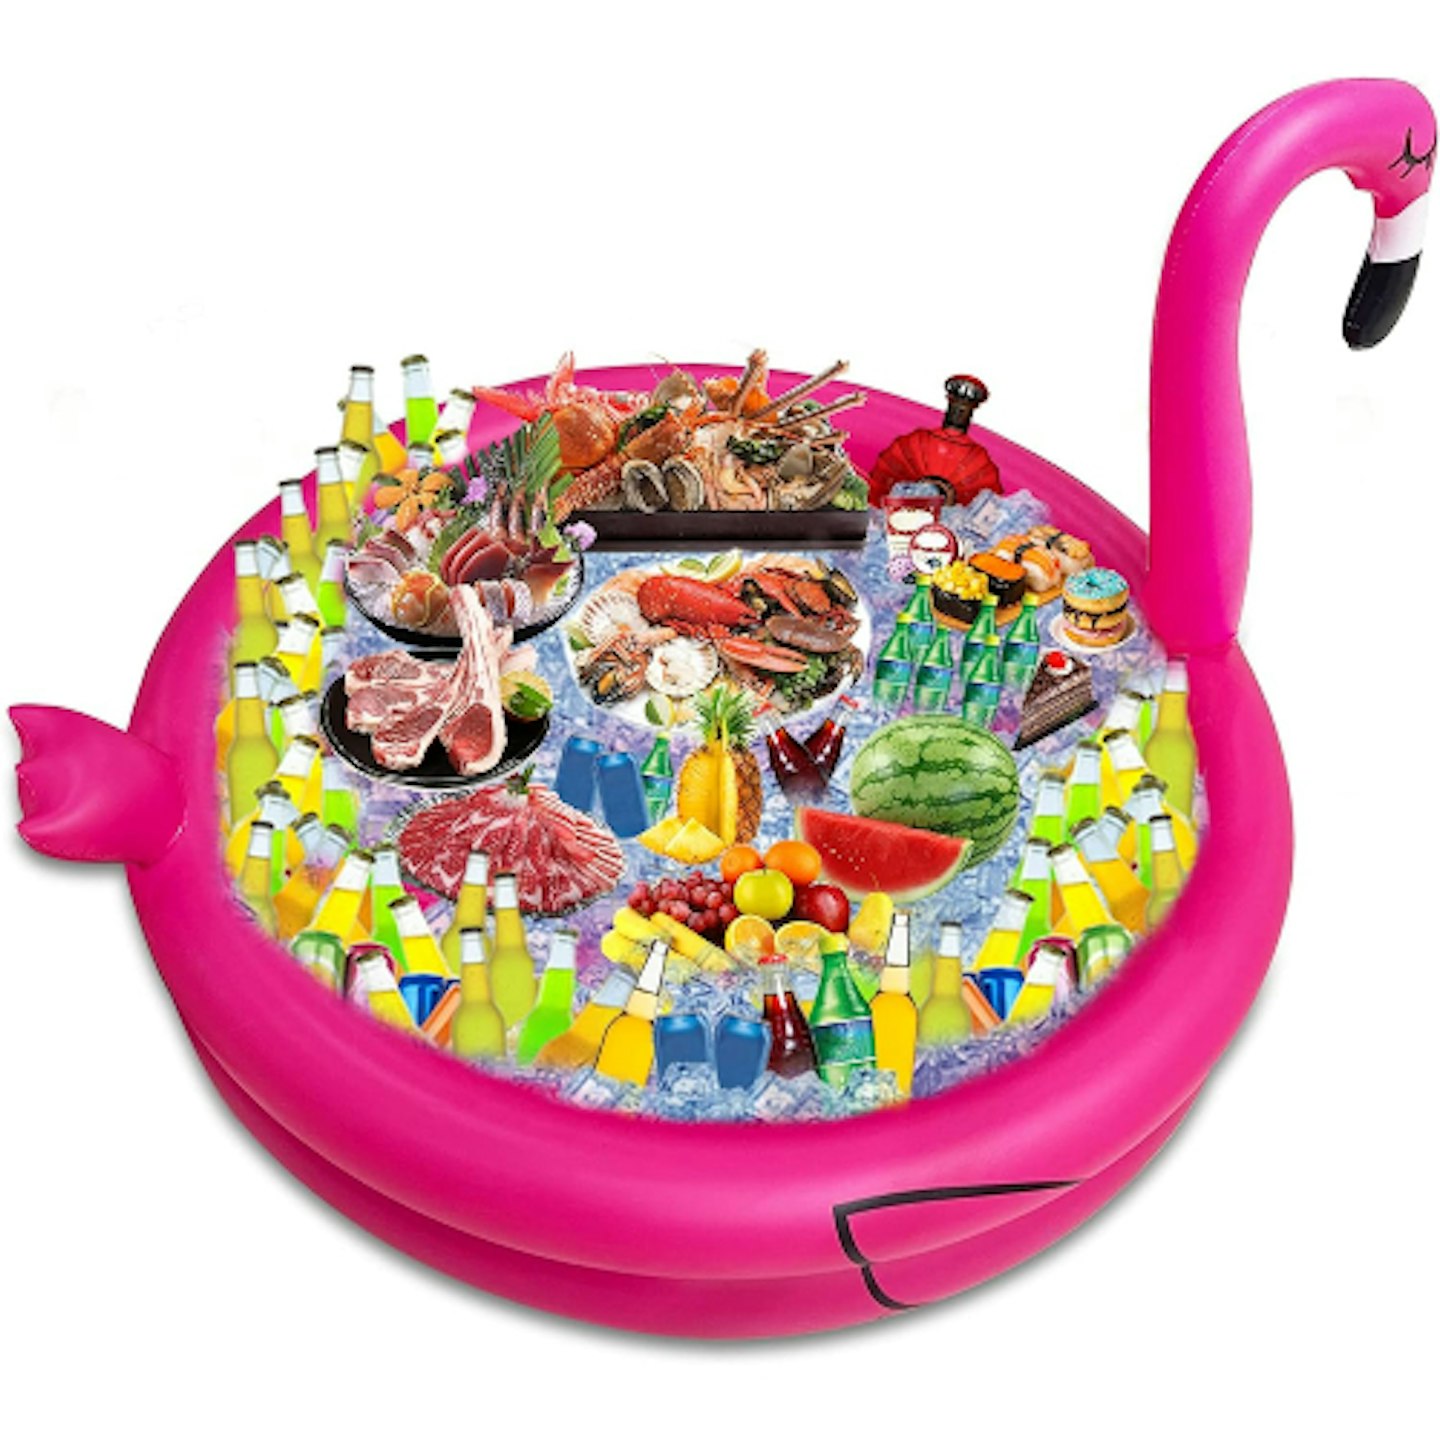 Flamingo cooler 